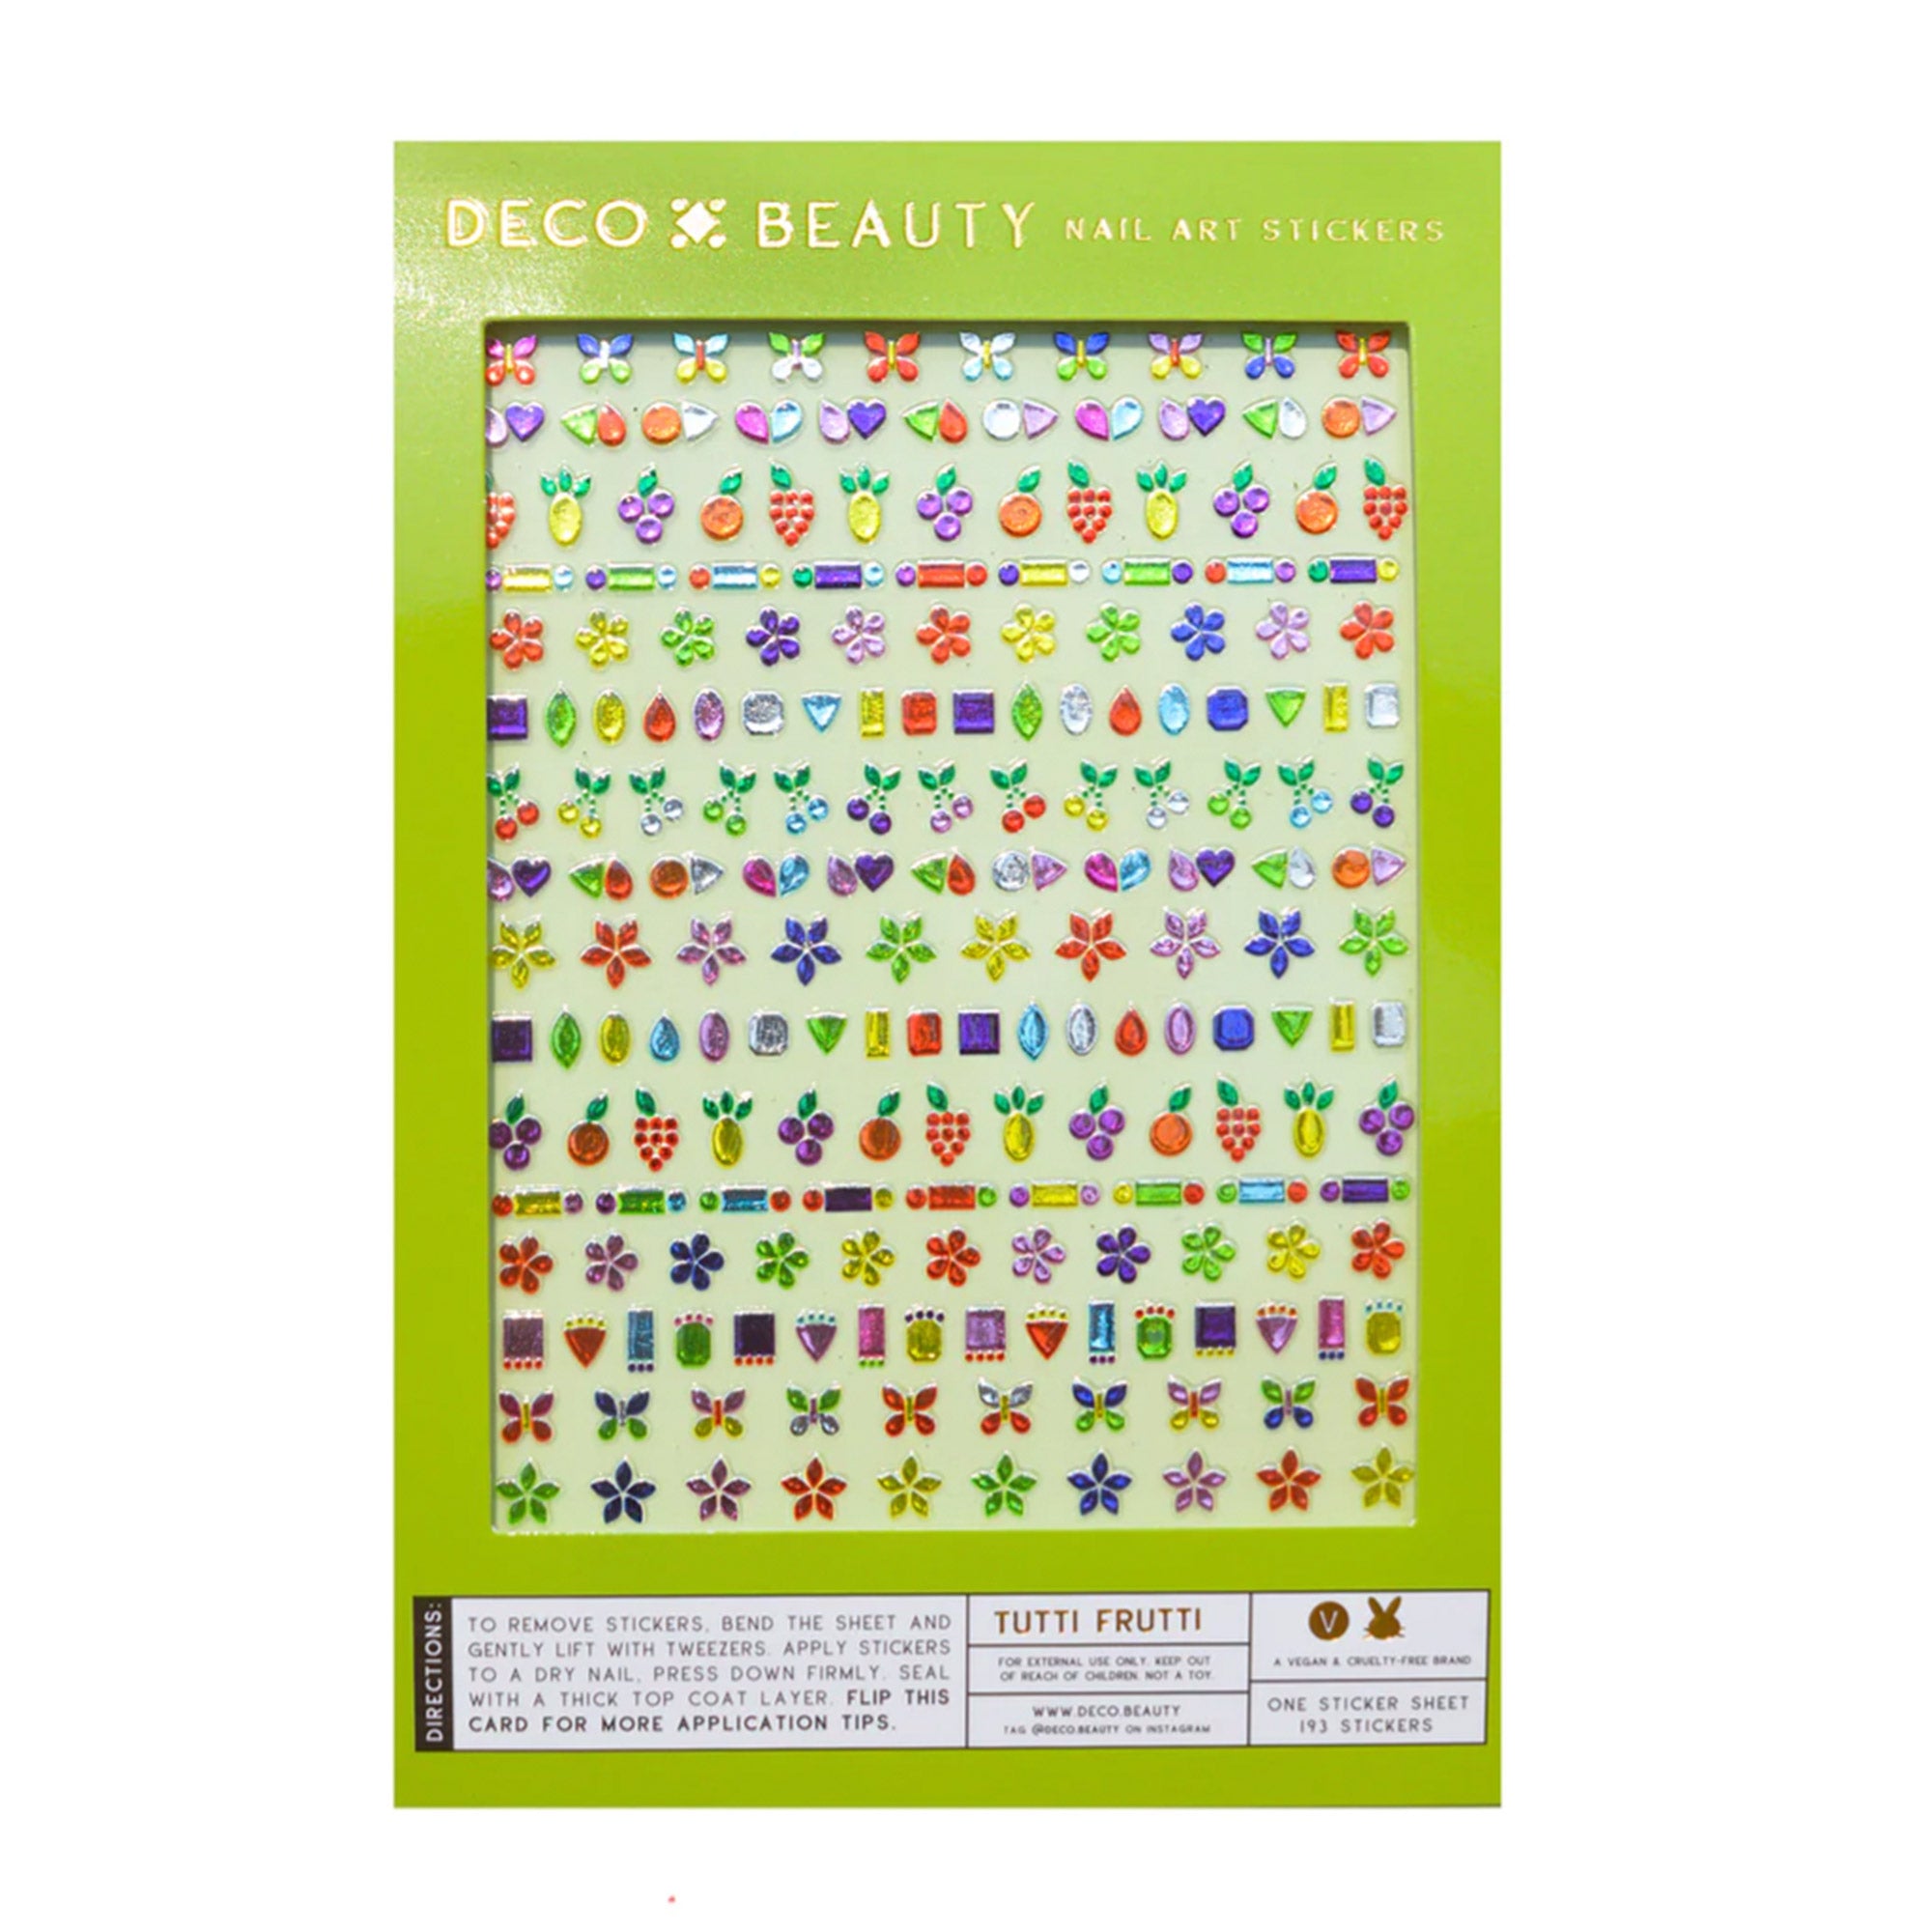 Deco Beauty Nail Art Stickers / Tutti Fruiti